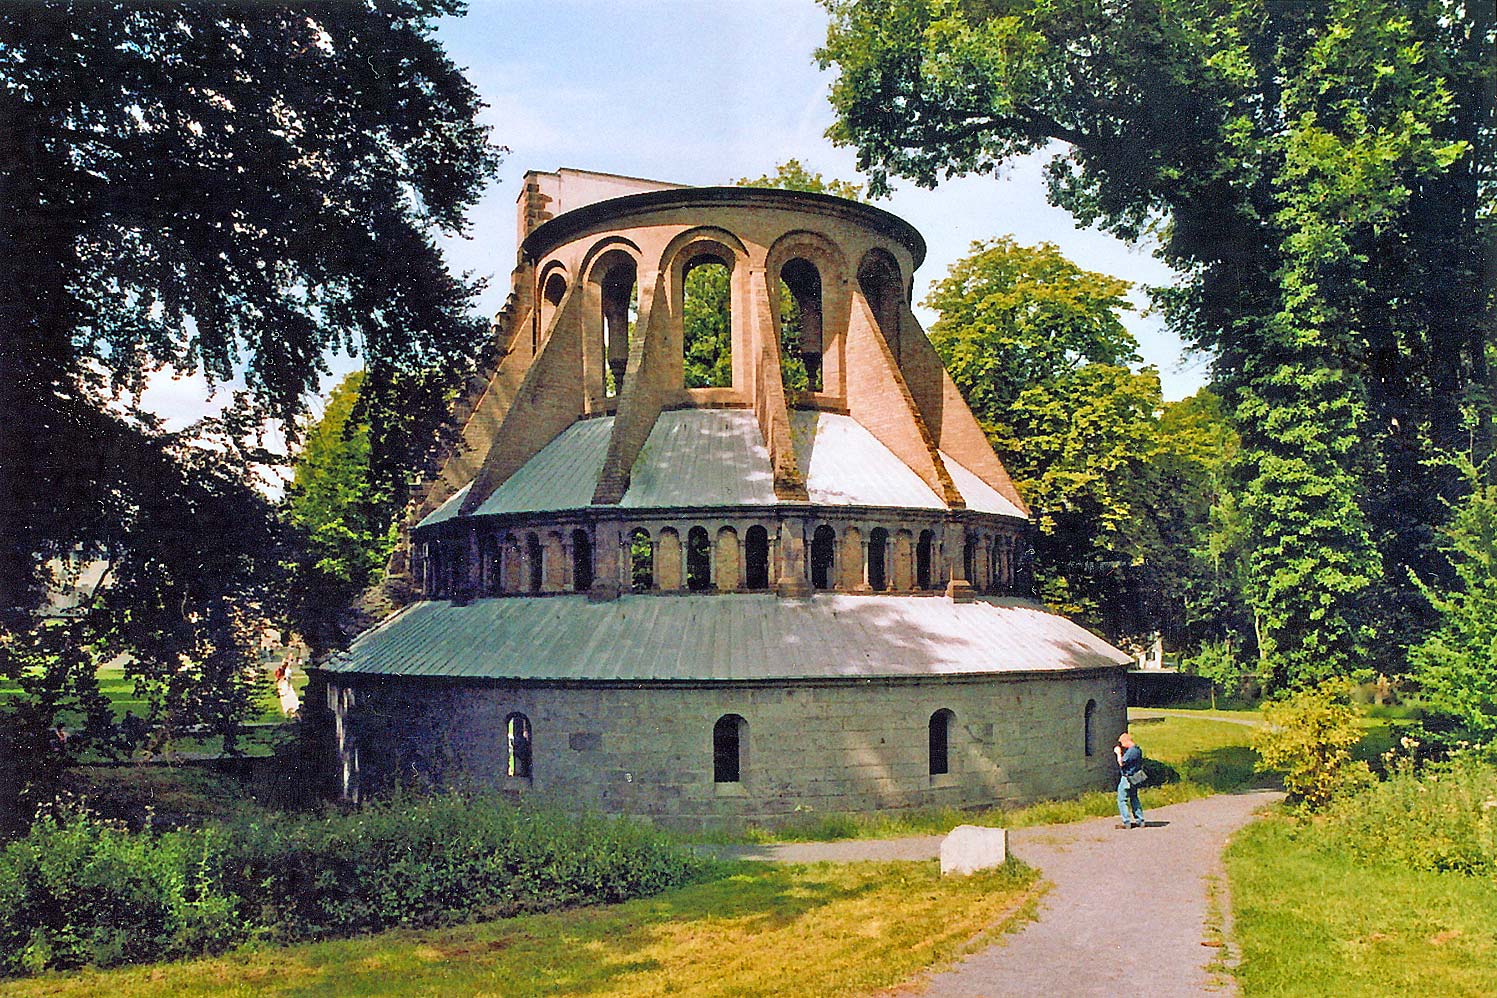  Kloster Heisterbach